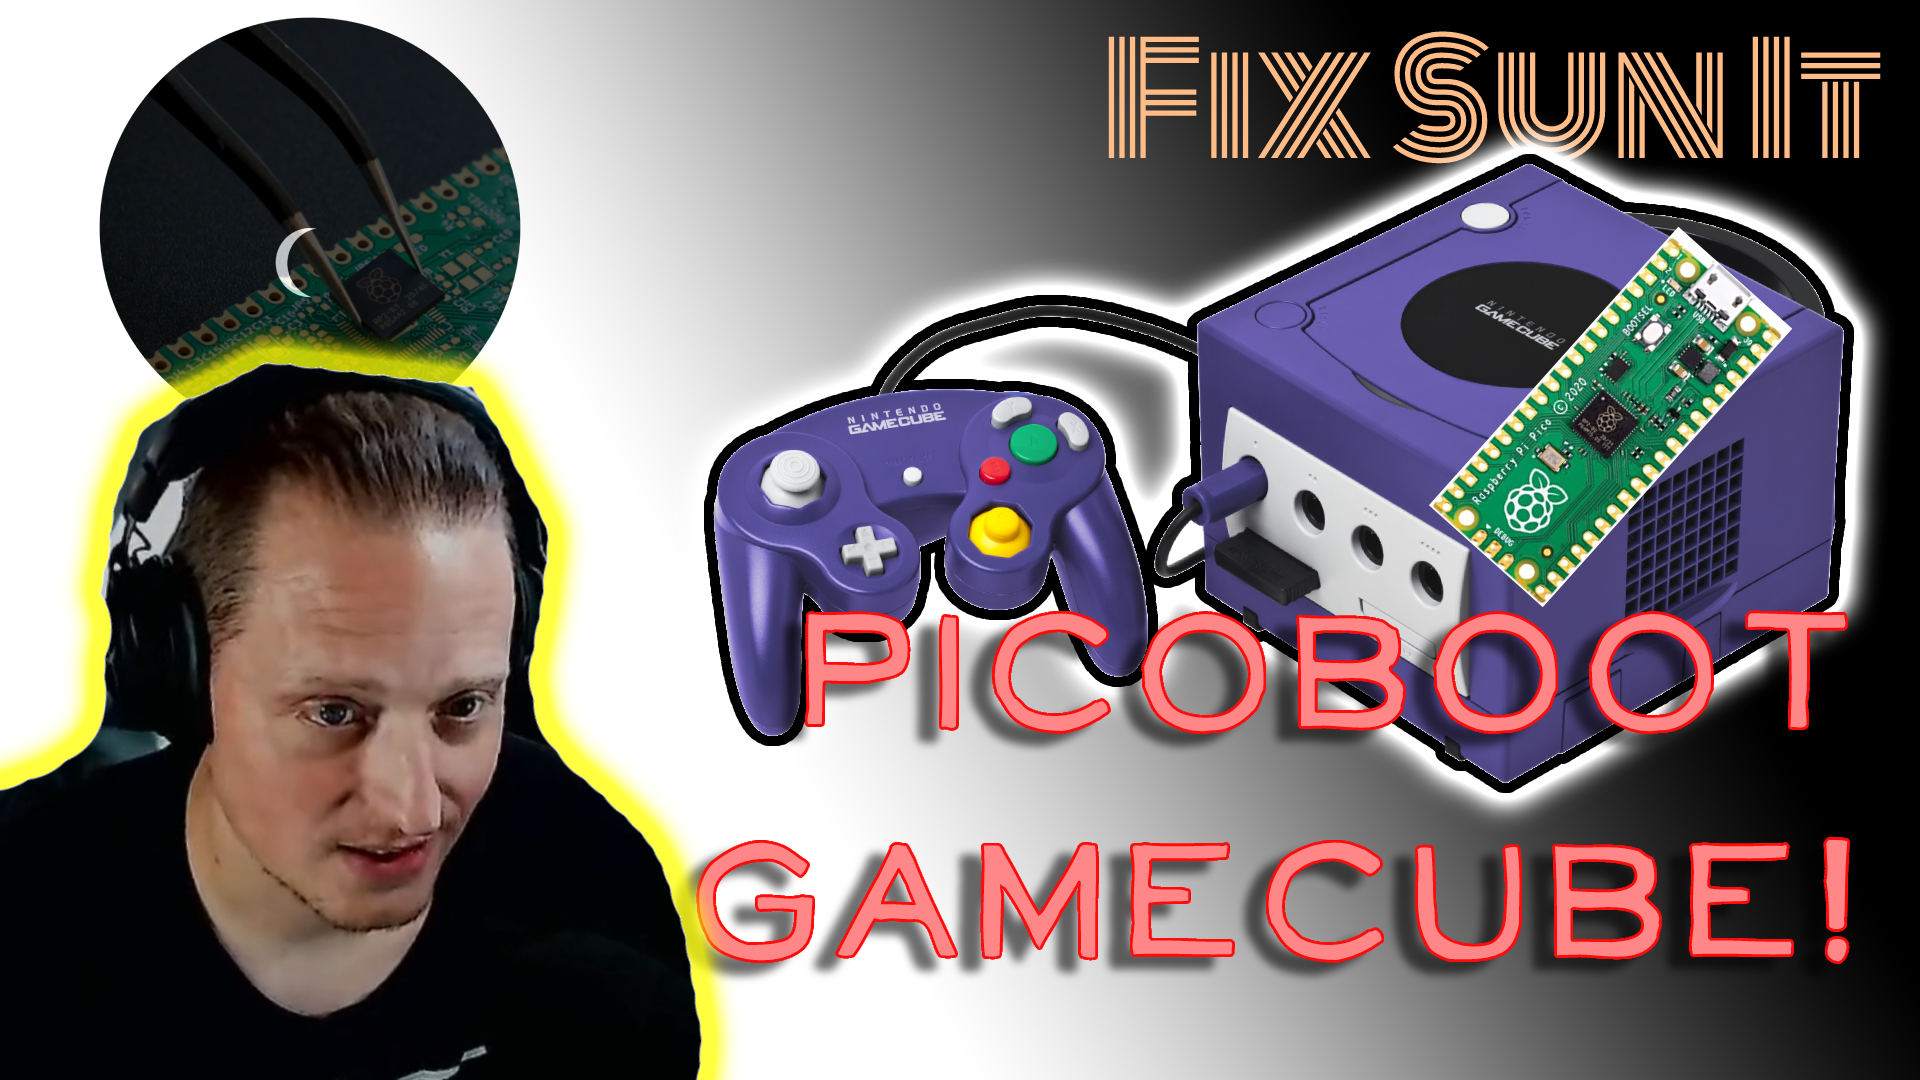 PicoBoot GameCube install – Full Live Stream!